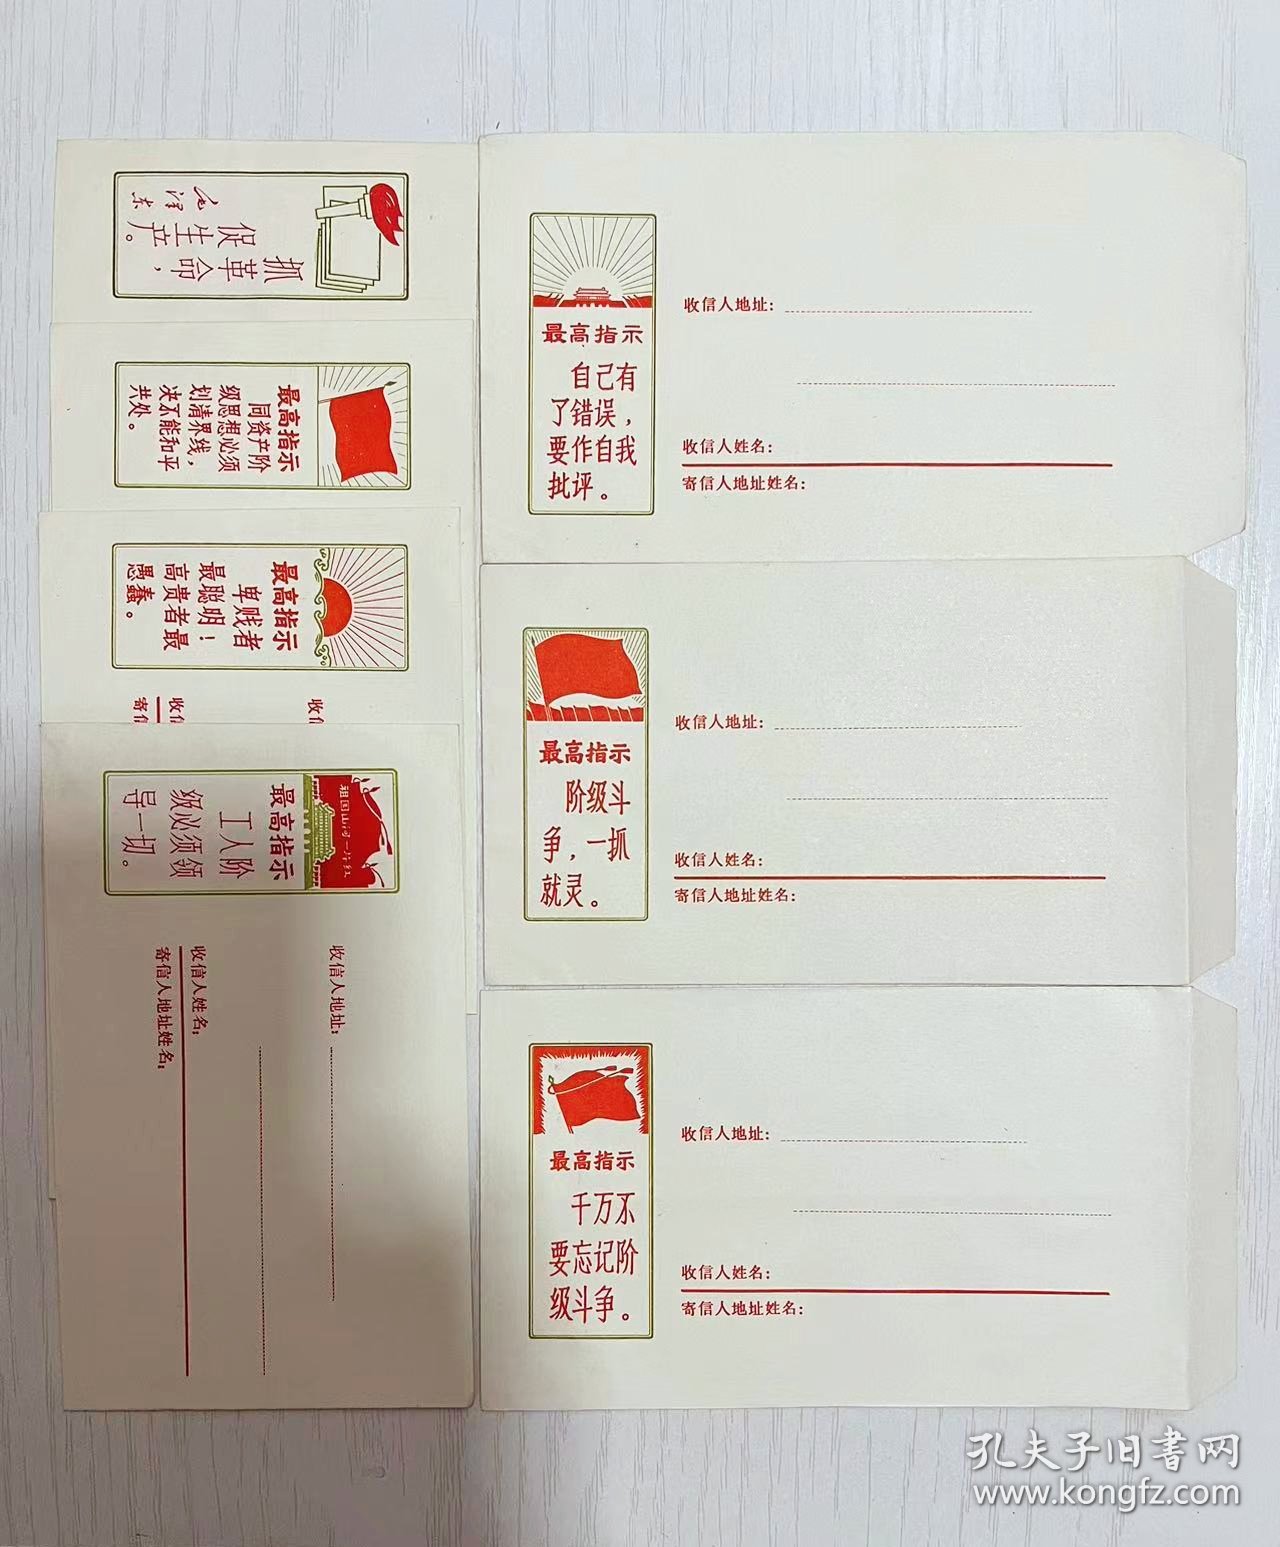 7枚1969年的老信封 带《最高指示》各有不同的毛主席语录...＊＊时代色彩红彤彤...高端大气上档次，品相一流！